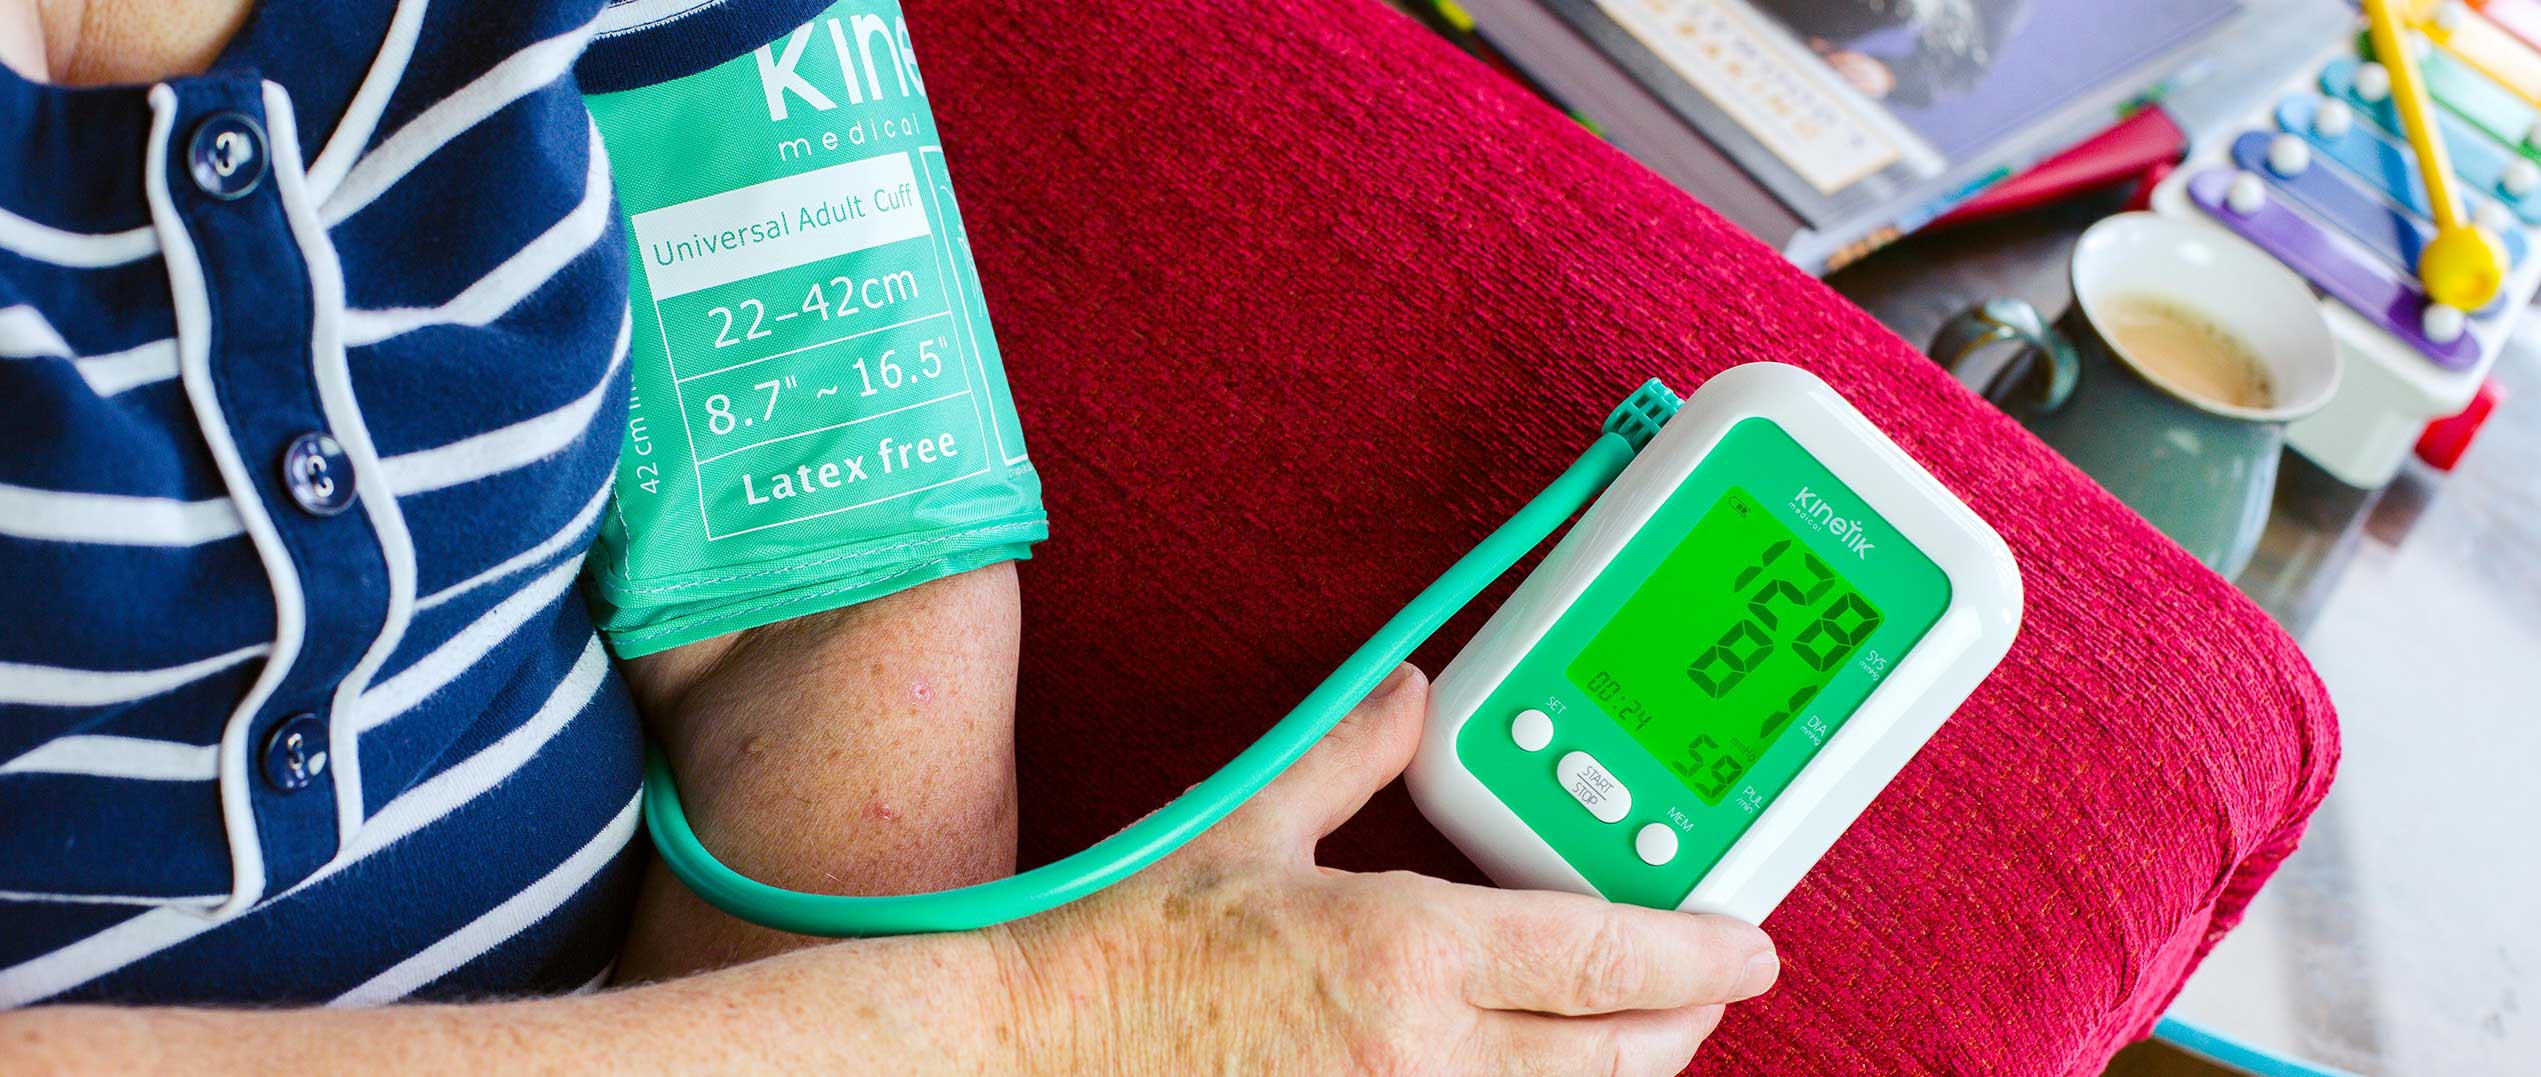 otthoni vérnyomásmérés szabályai